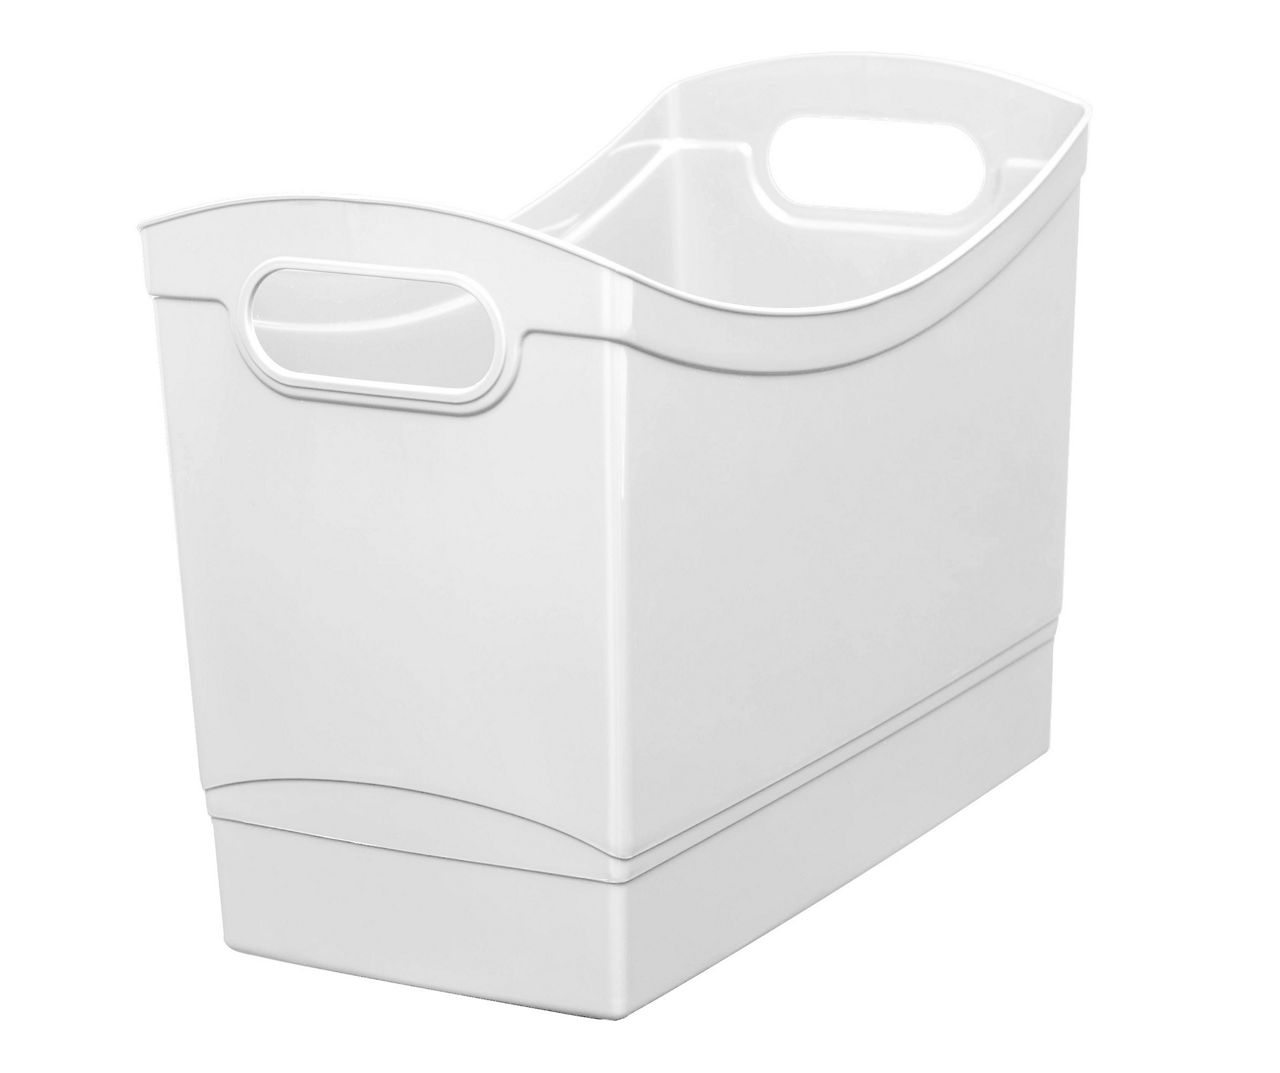 Small Two-Compartment All-Purpose Bin Single - 1 plastic bin